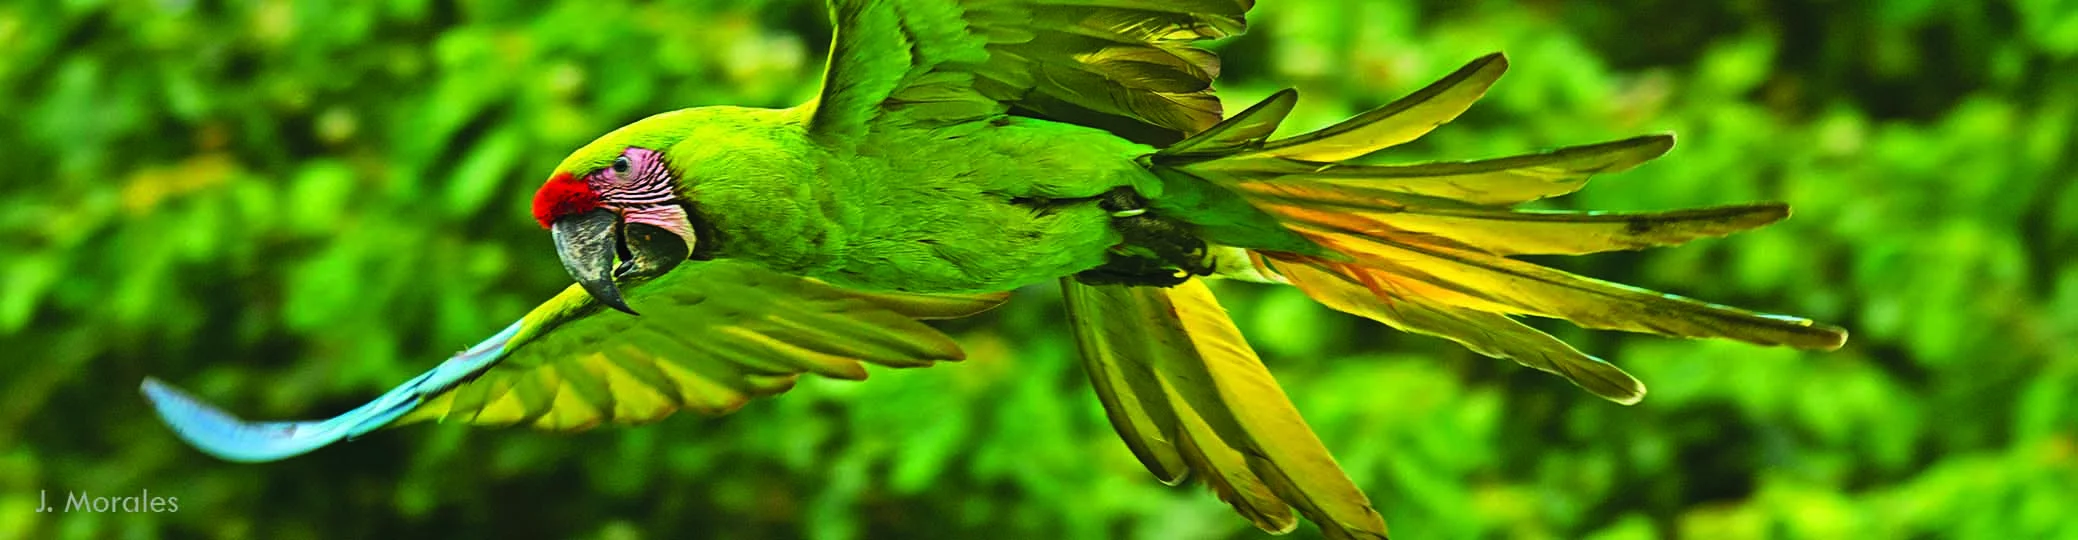 Titelbild:  Zootier des Jahres 2023 - Fliegender Ara mit grünem Gefieder vor grünem Hintergrund der Bäume und Sträucher 